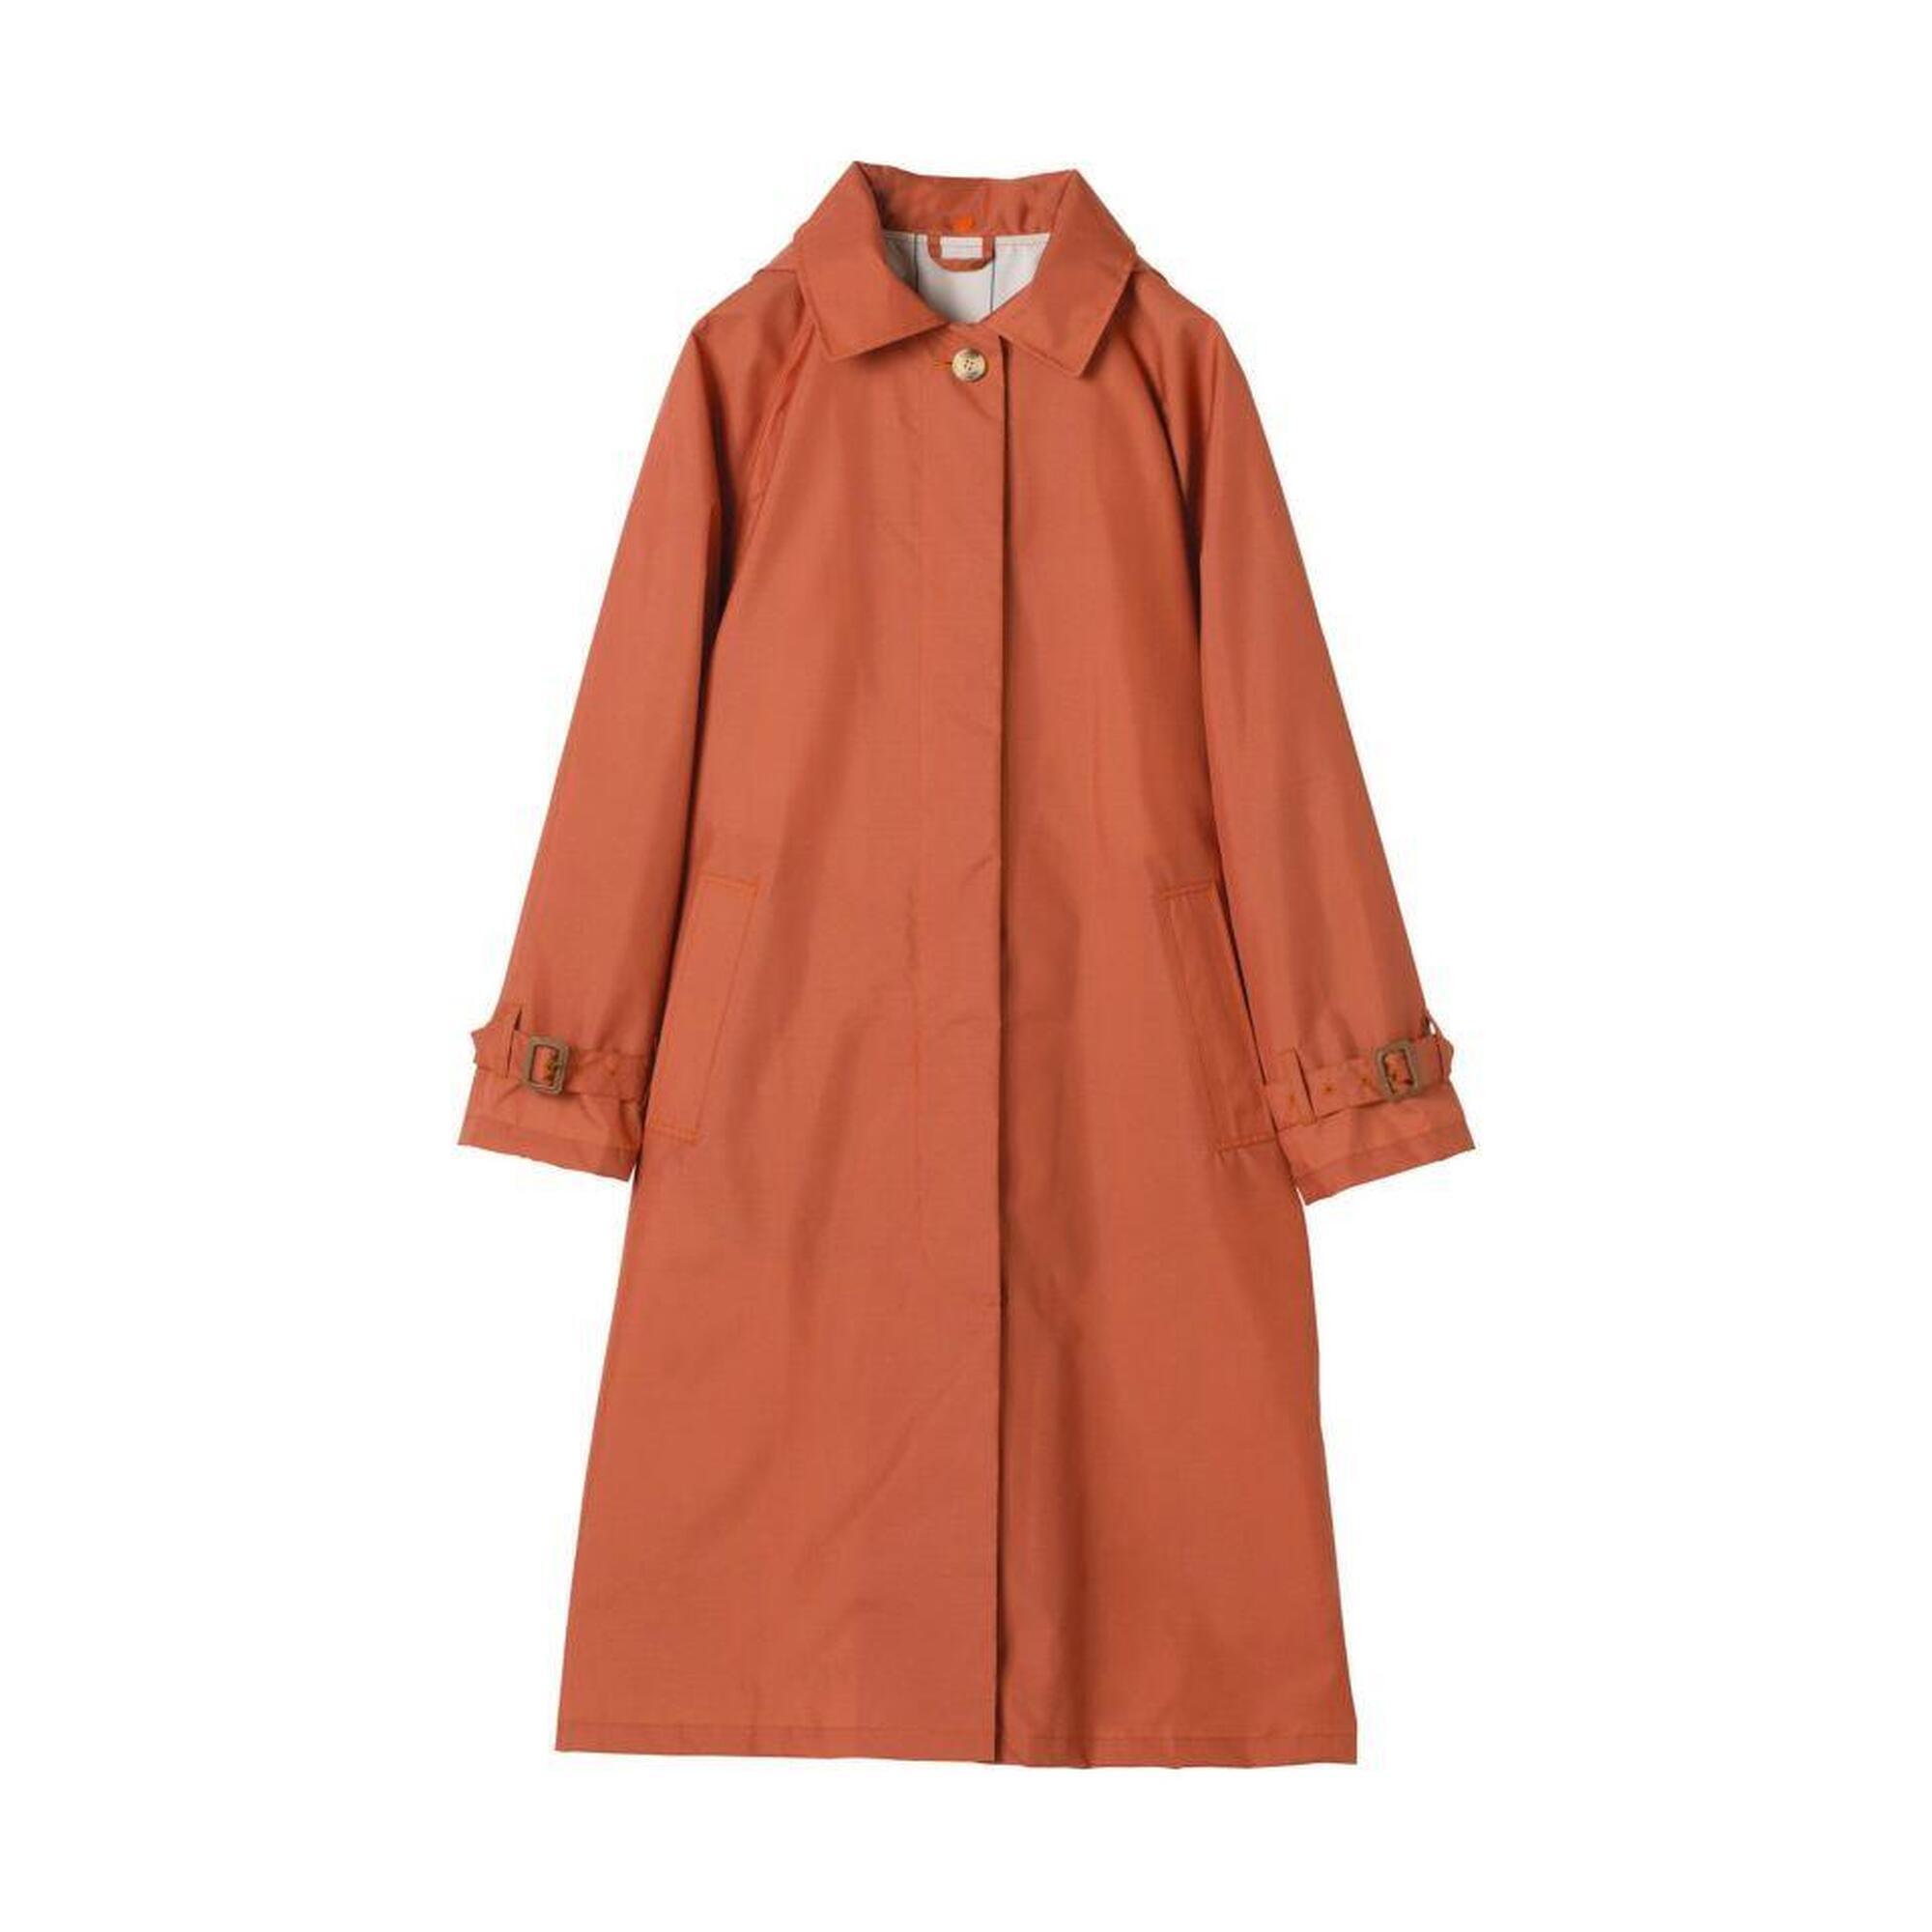 R1102 雨衣 - 橙色 (附收納袋)